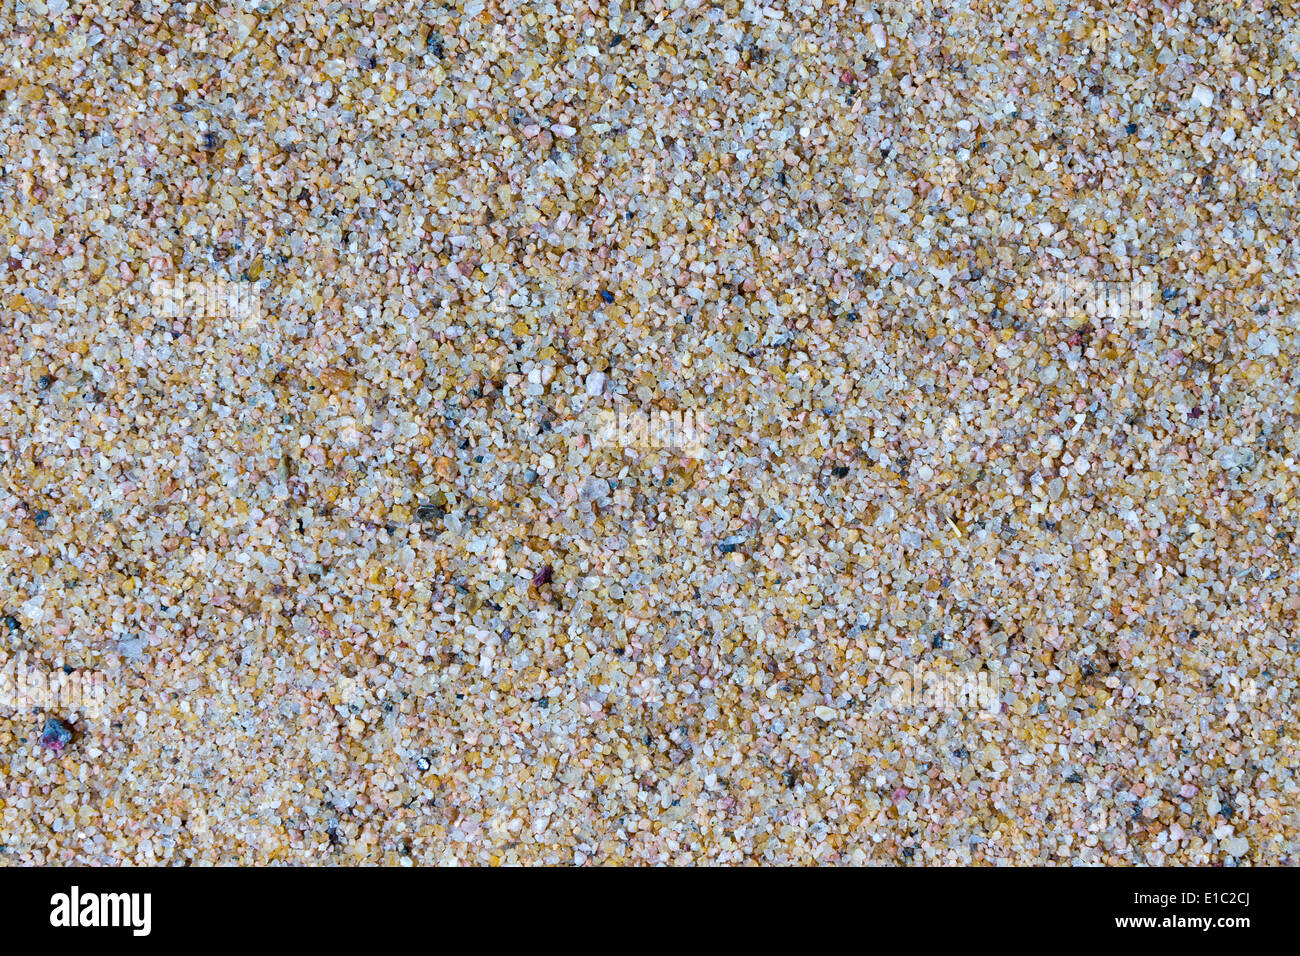 Fond macro texture du sable de plage composé de granulés et particules de roches altérées et érodé, minéraux, corail et elle Banque D'Images